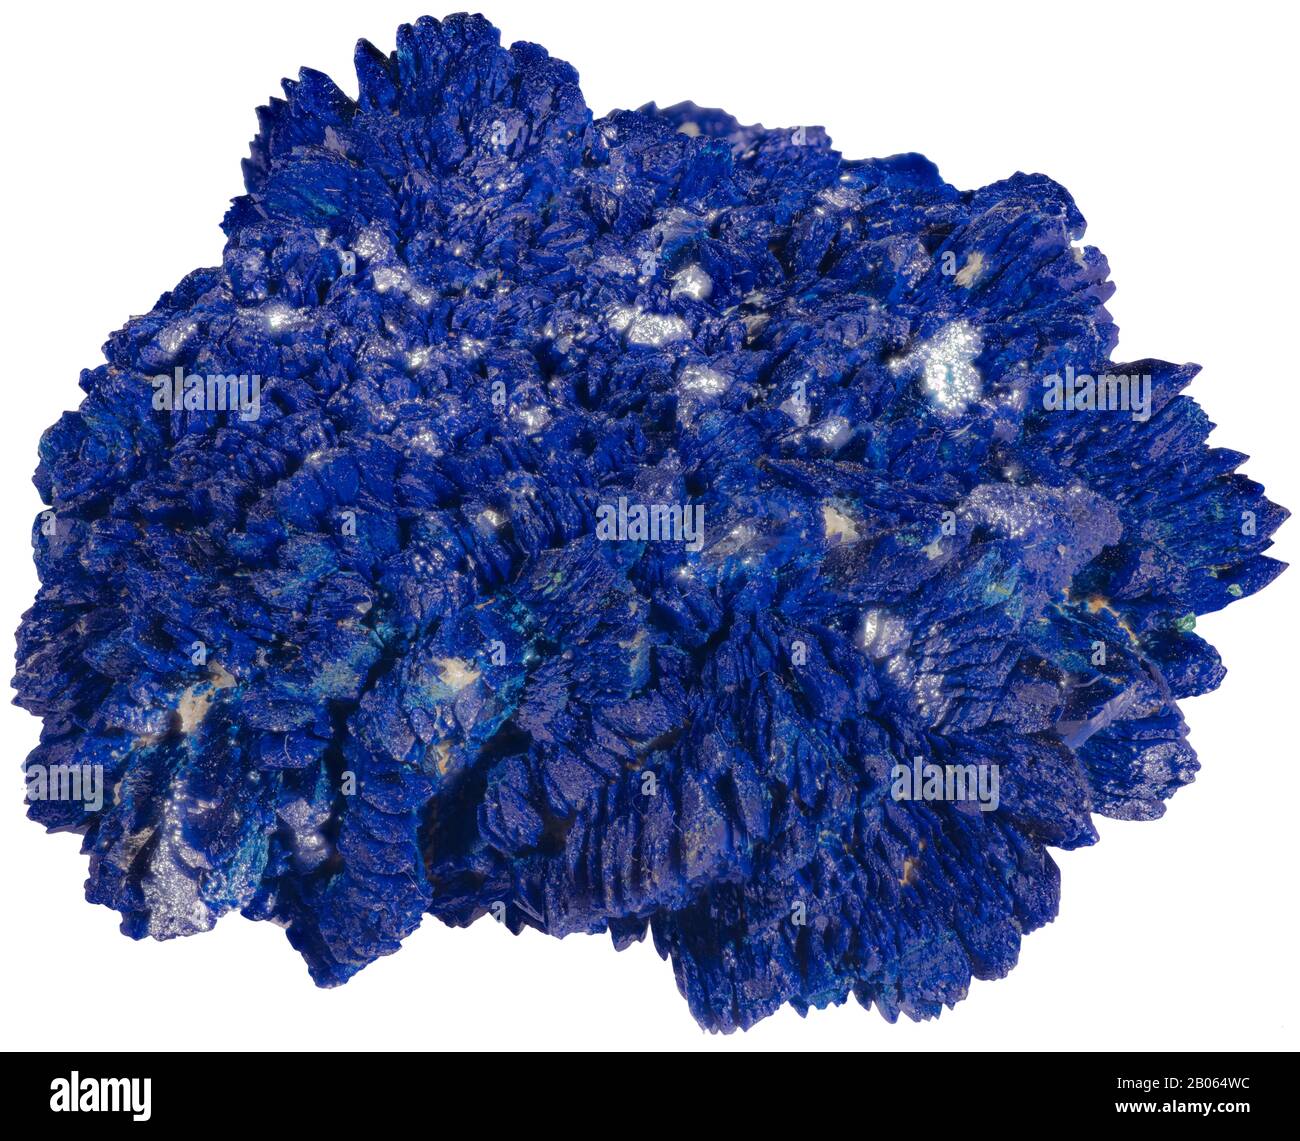 Azurita es una piedra suave, llamada así por su profundo color azul celeste. Es un mineral de carbonato de cobre que se encuentra en las partes oxidadas superiores del mineral de cobre fo Foto de stock